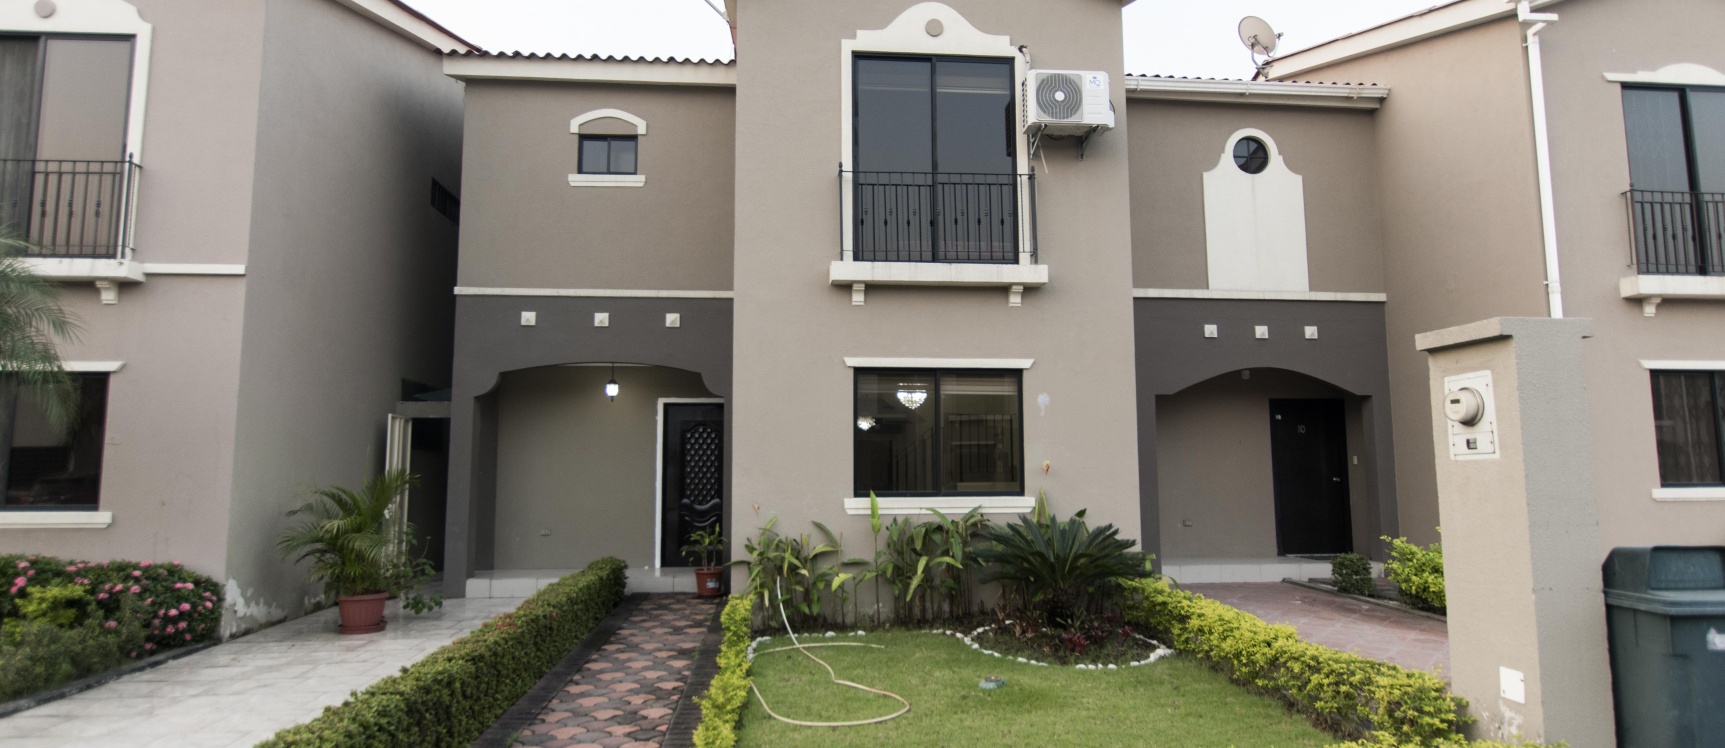 GeoBienes - Casa amoblada en alquiler ubicada en Urbanización La Romareda - Plusvalia Guayaquil Casas de venta y alquiler Inmobiliaria Ecuador